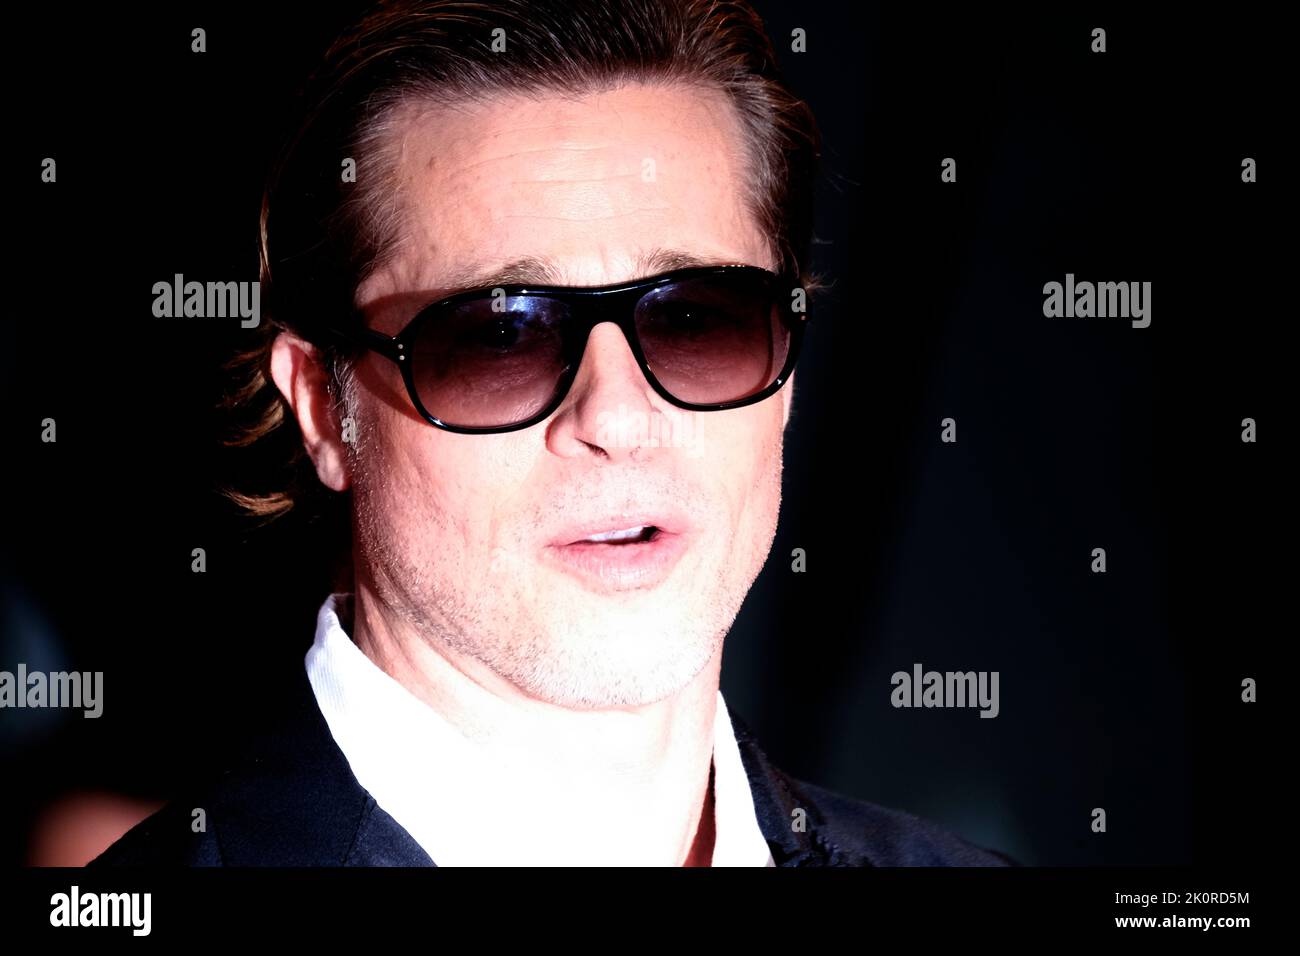 Der amerikanische Schauspieler Brad Pitt bei den Internationalen Filmfestspielen von Venedig 79 2022. Blonder Roter Teppich. Venedig, Italien, 8.. September 2022 Stockfoto